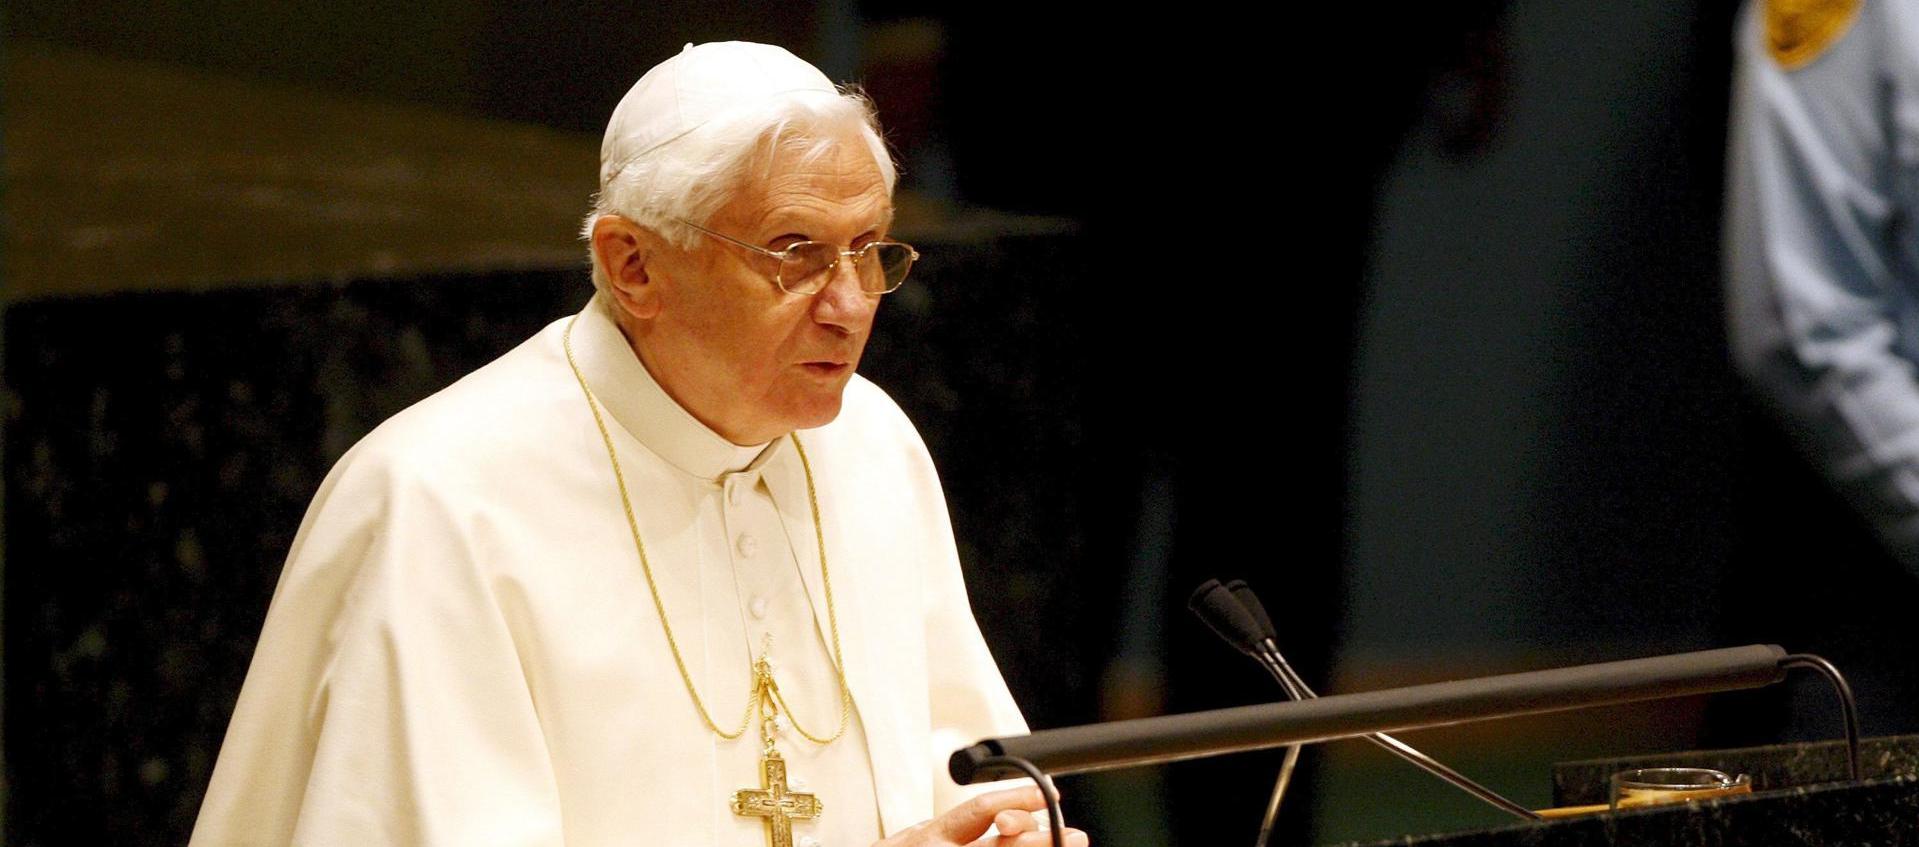 Benedicto XVI fue papa de 2005 a 2013.